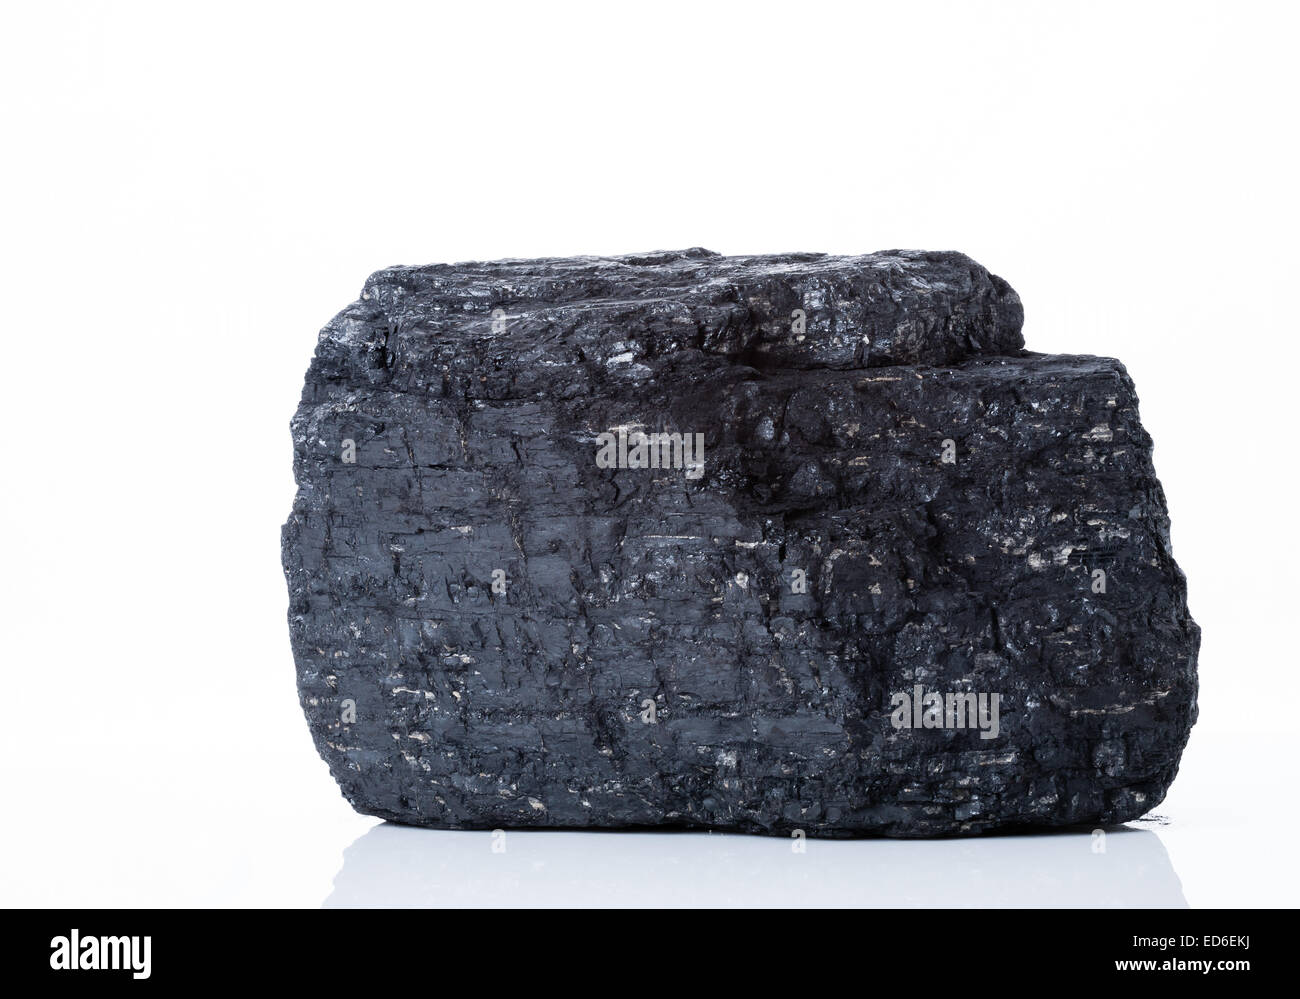 Un grand morceau de charbon bitumineux noir sur fond blanc Banque D'Images